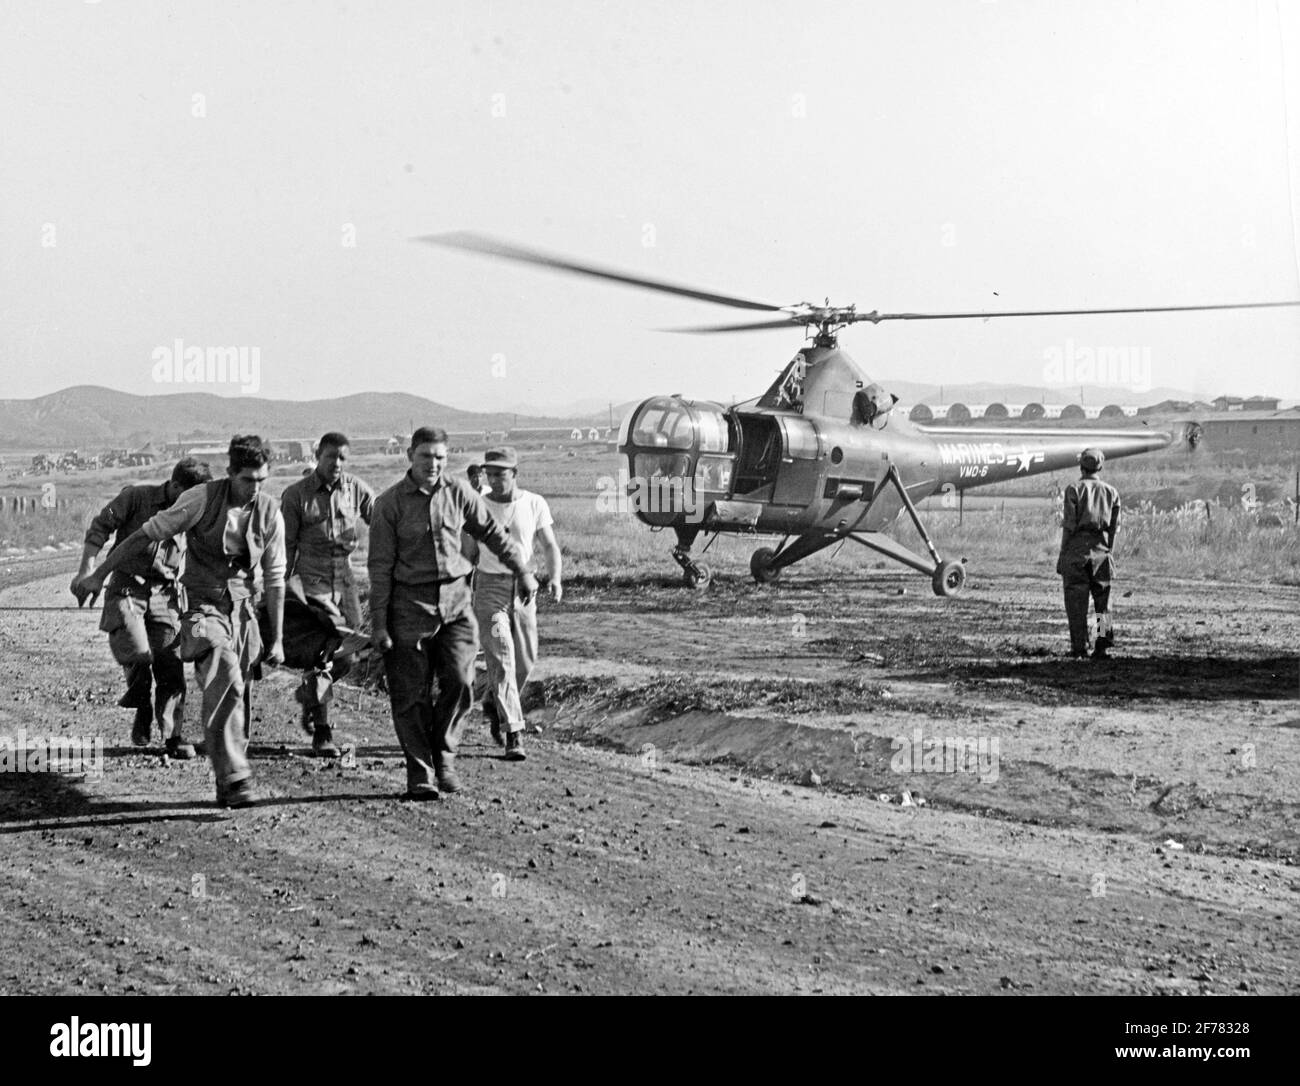 Évacuation des blessés de guerre de Corée. Navy Corpmen Herald B. Williams, James E. Carr et William N. Shipworth aident à transporter un blessé d'un hélicoptère d'évacuation HO3S-1 du corps des Marines des États-Unis vers un hôpital en Corée. L'hélicoptère provient de l'escadron VMO-6. La photo originale est datée du 3 octobre 1950, auquel cas elle a probablement été prise lors des opérations du corps des Marines dans les environs de Séoul, en Corée. Banque D'Images